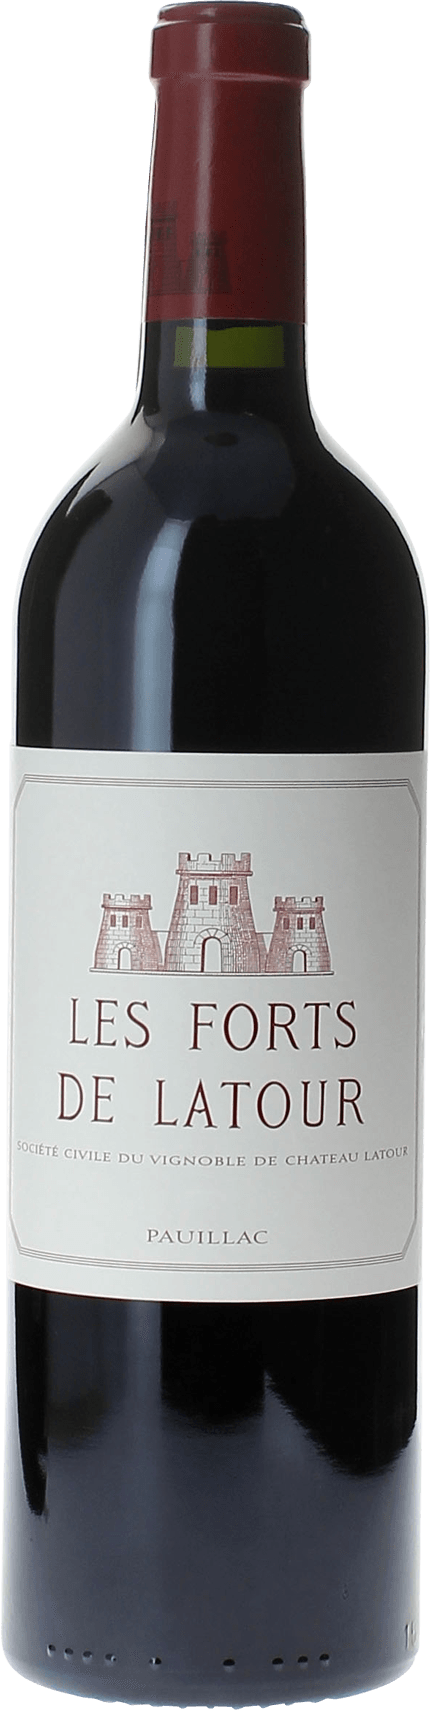 Les forts de latour 2001 2me vin de LATOUR Pauillac, Bordeaux rouge